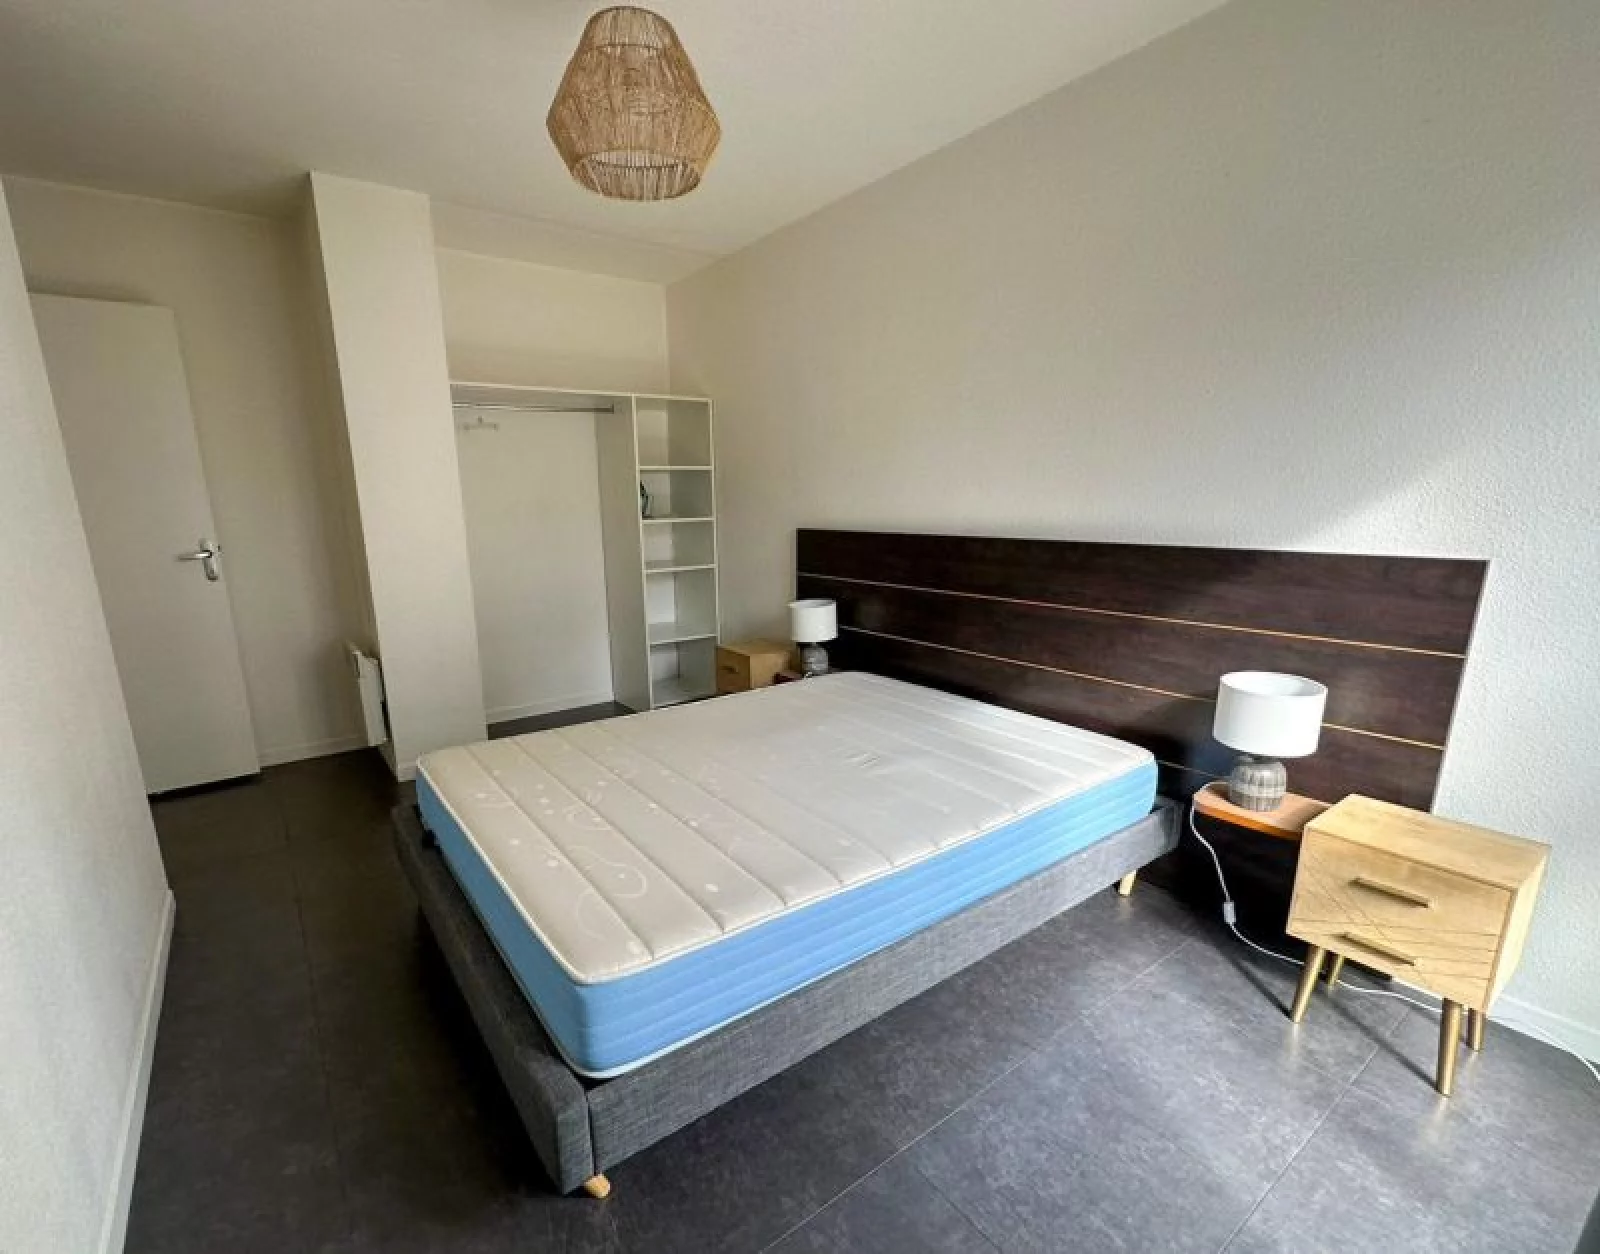 Location appartement meublé duplex 4 pièces 94m² (Paris est - Bry s/ Marne)